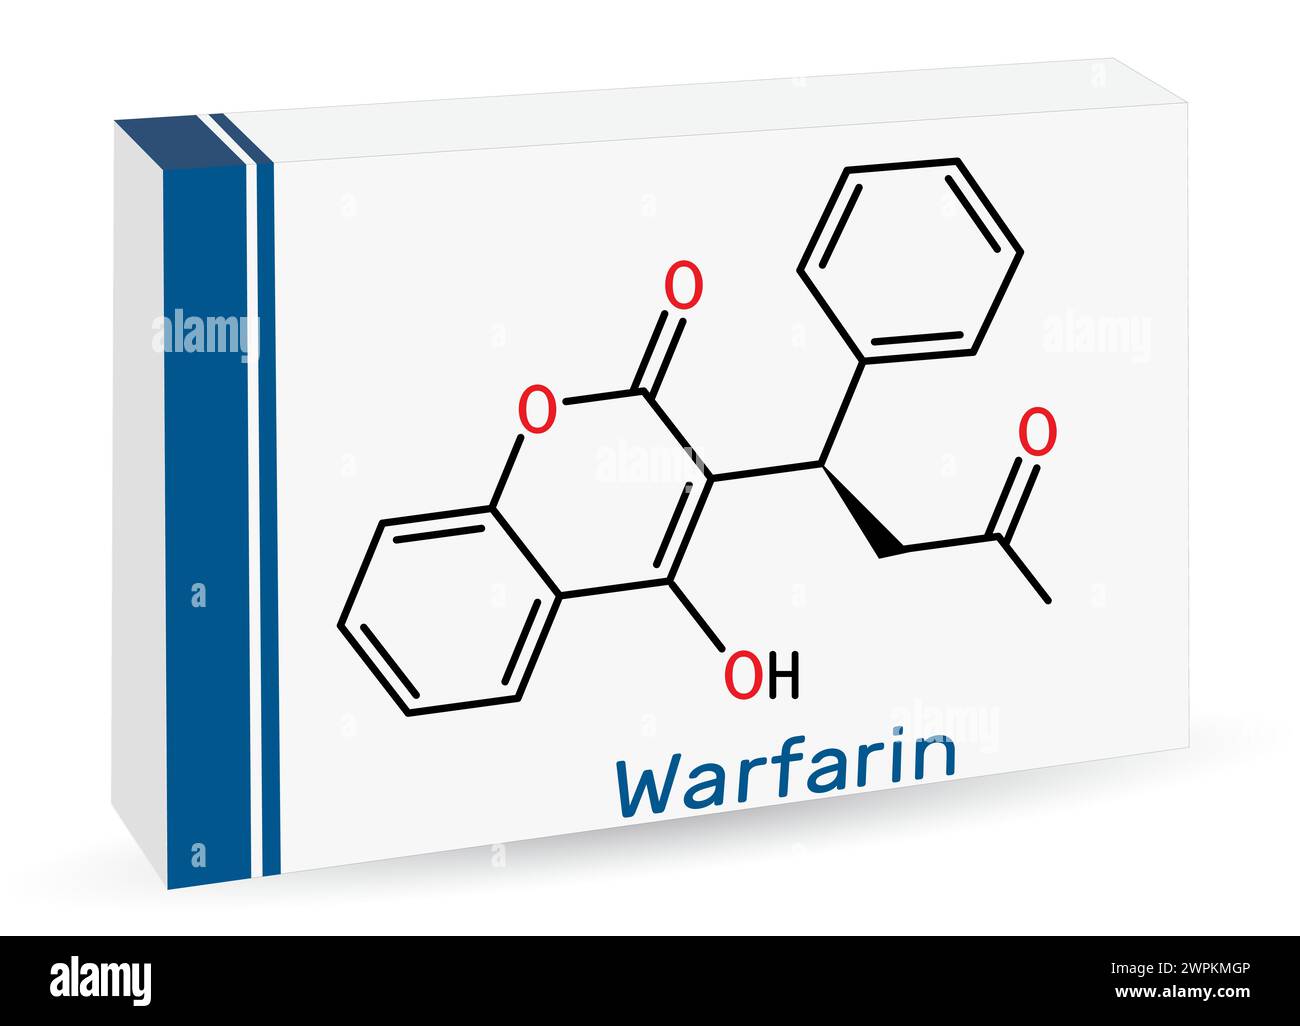 Warfarin-Arzneimittelmolekül. Warfarin ist ein Antikoagulans, das zur Verhinderung der Bildung von Blutgerinnseln angewendet wird. Die chemische Formel des Skeletts. Papierverpackungen für Medikamente. Vect Stock Vektor